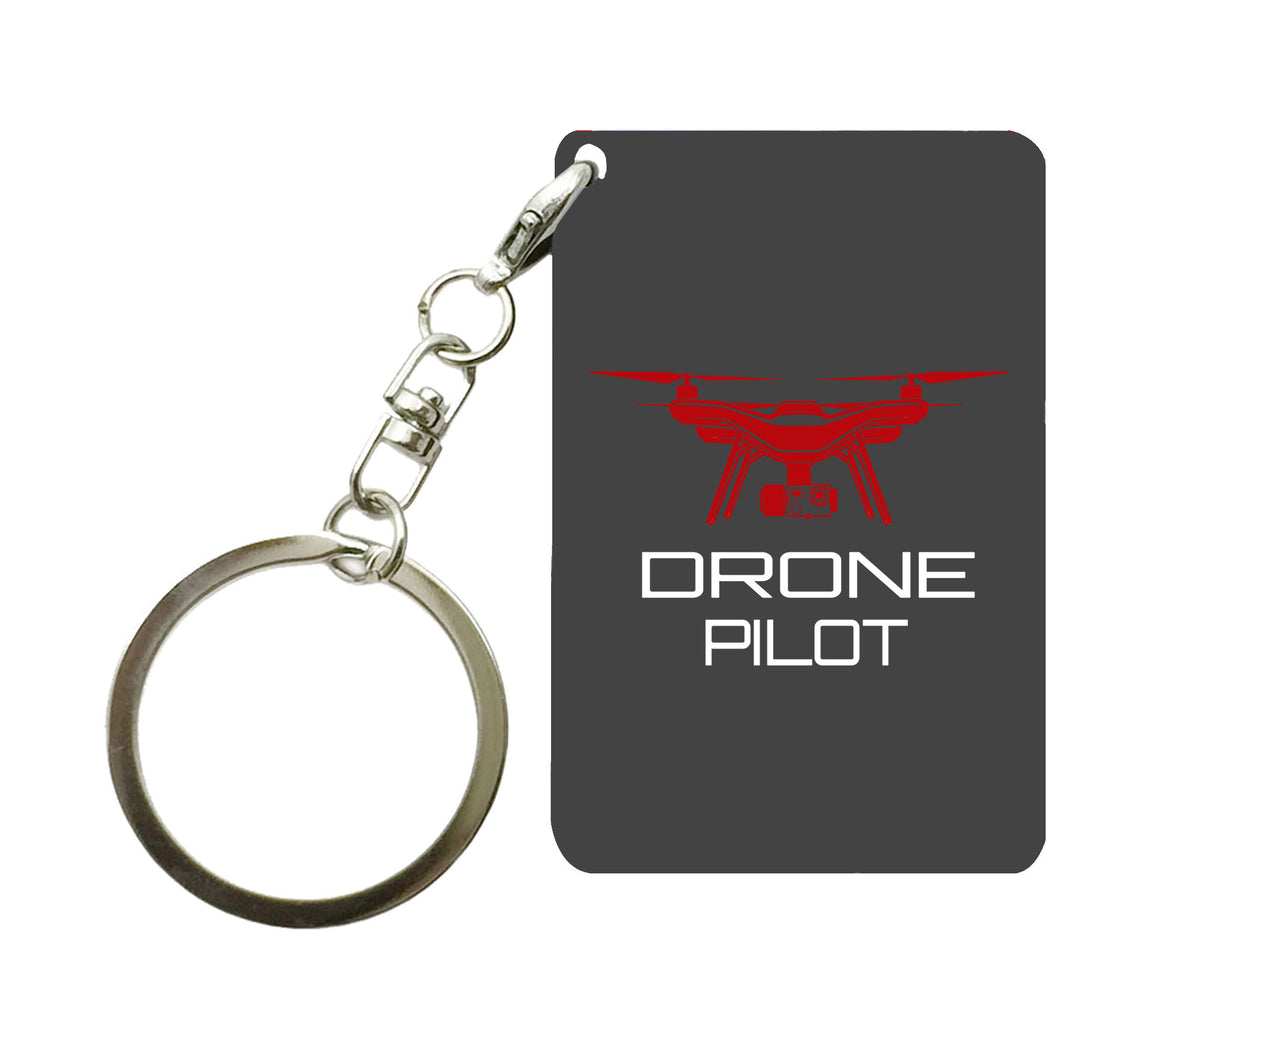 Drone Pilot Designed Key Chains